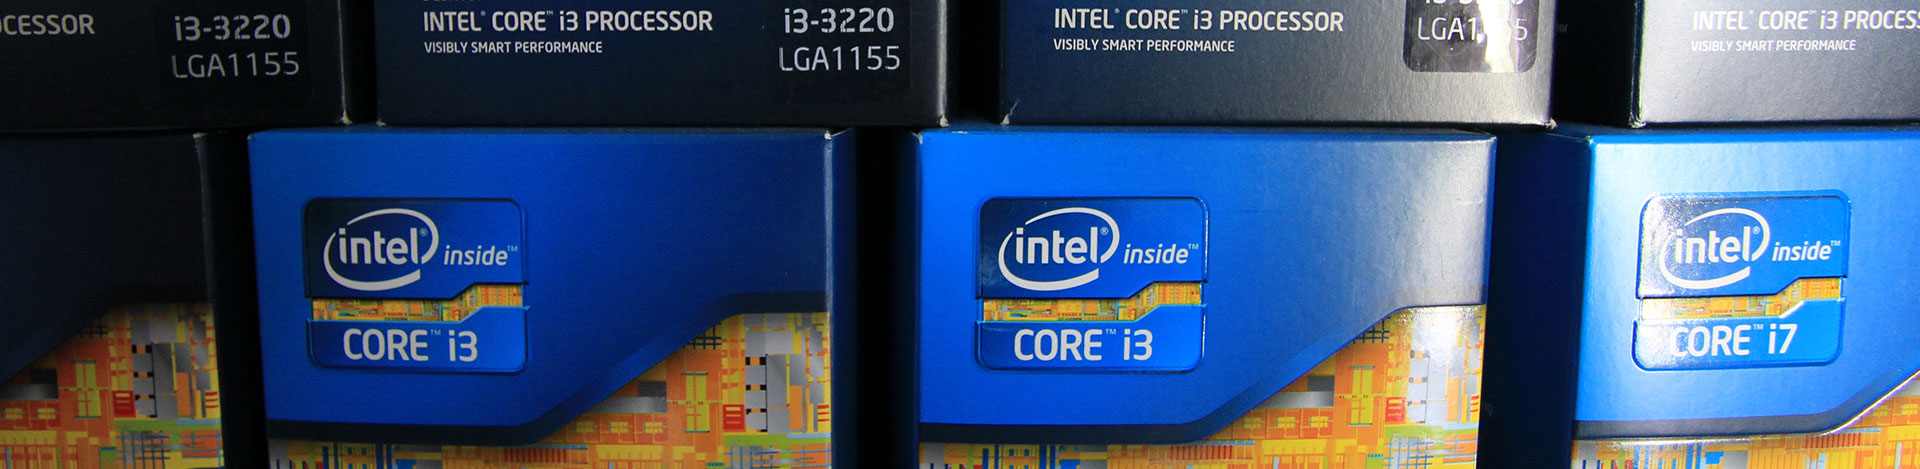 Krachtige Intel processoren